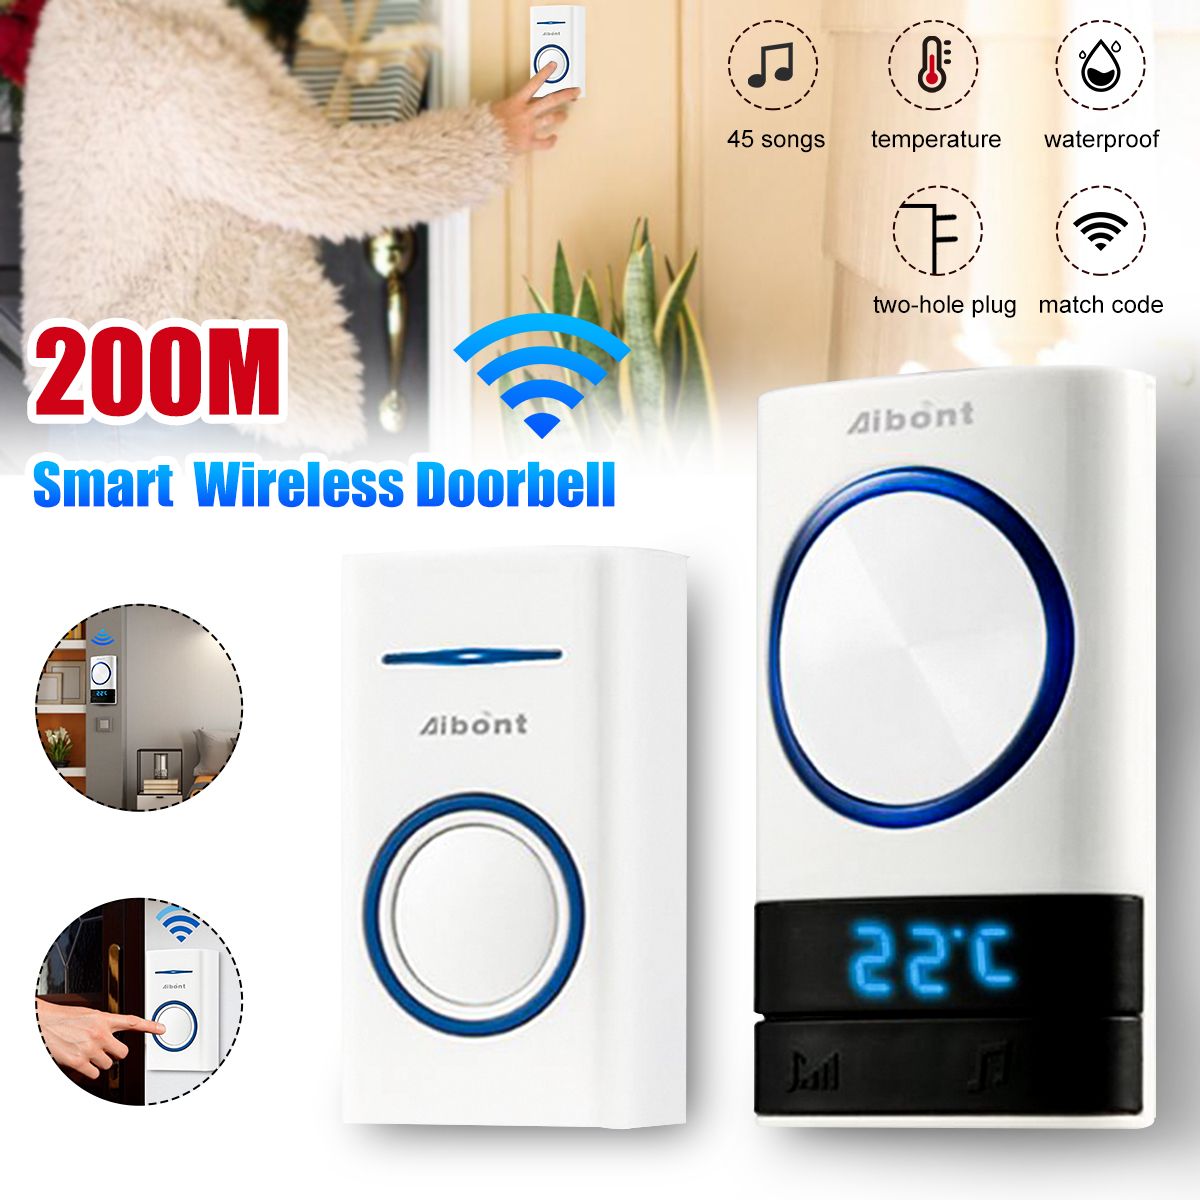 Smart-Wireless-Doorbell-45-Songs-Polyphonic-Ringtones-200m-Transmission-Door-Bell-1733573